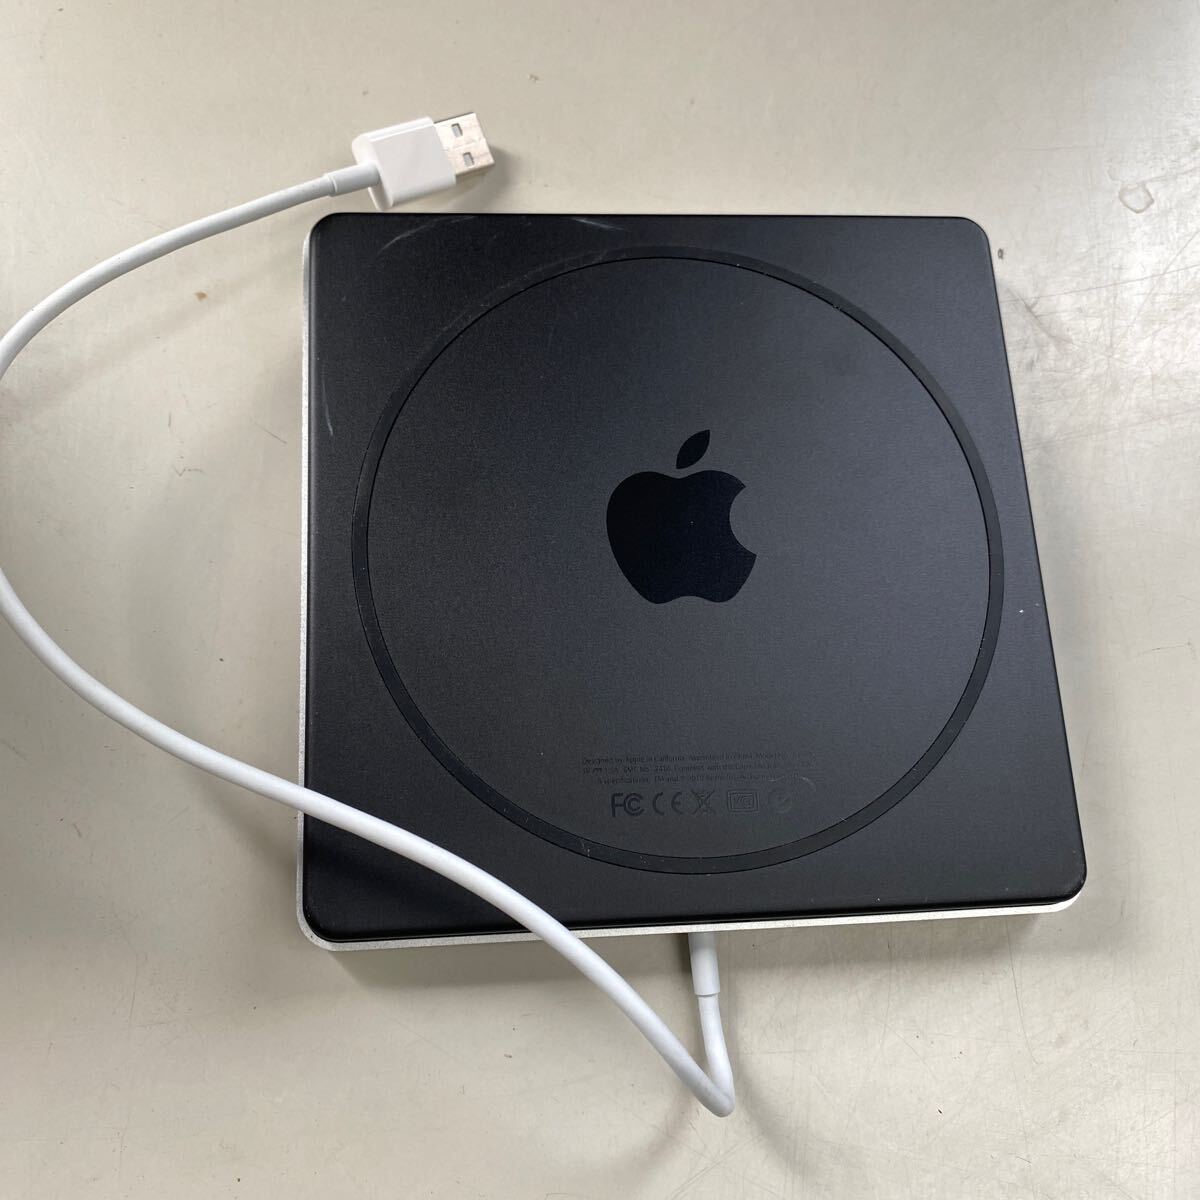 Apple USB スーパードライブ 外付けDVD Drive アップル マック アクセサリ 中古 W-0411-16の画像5